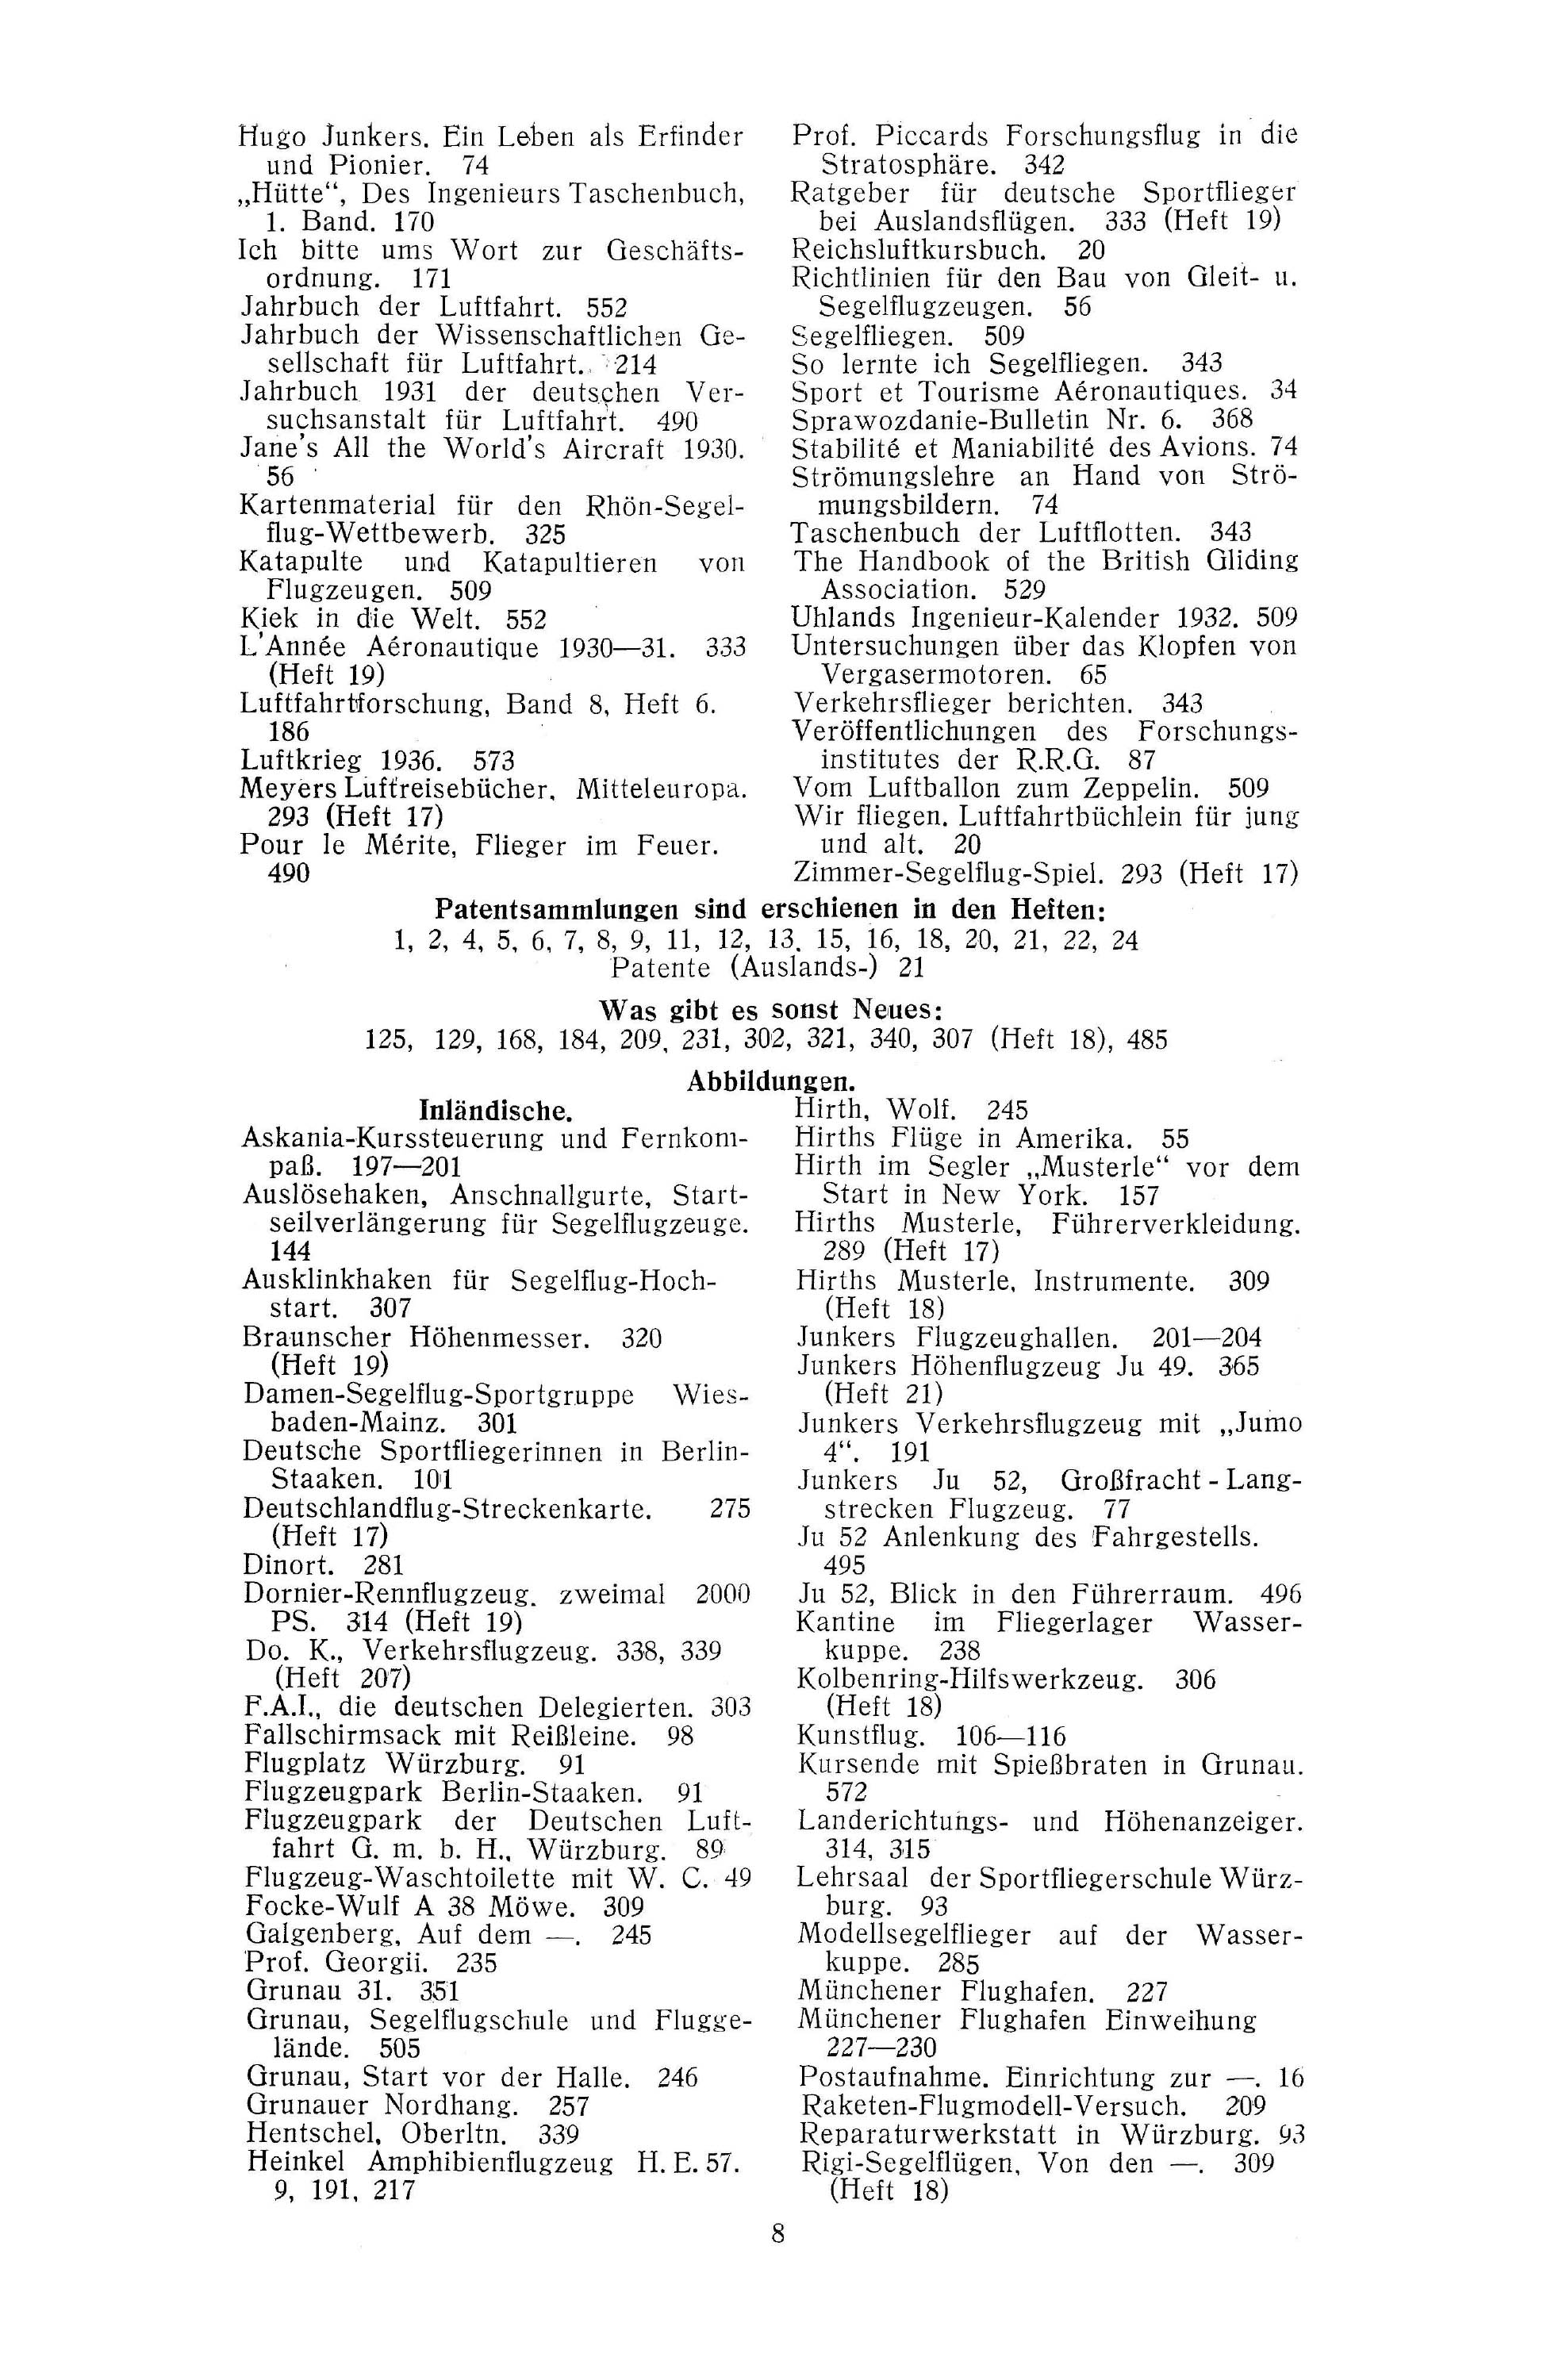 Sachregister und Inhaltsverzeichnis der Zeitschrift Flugsport 1931